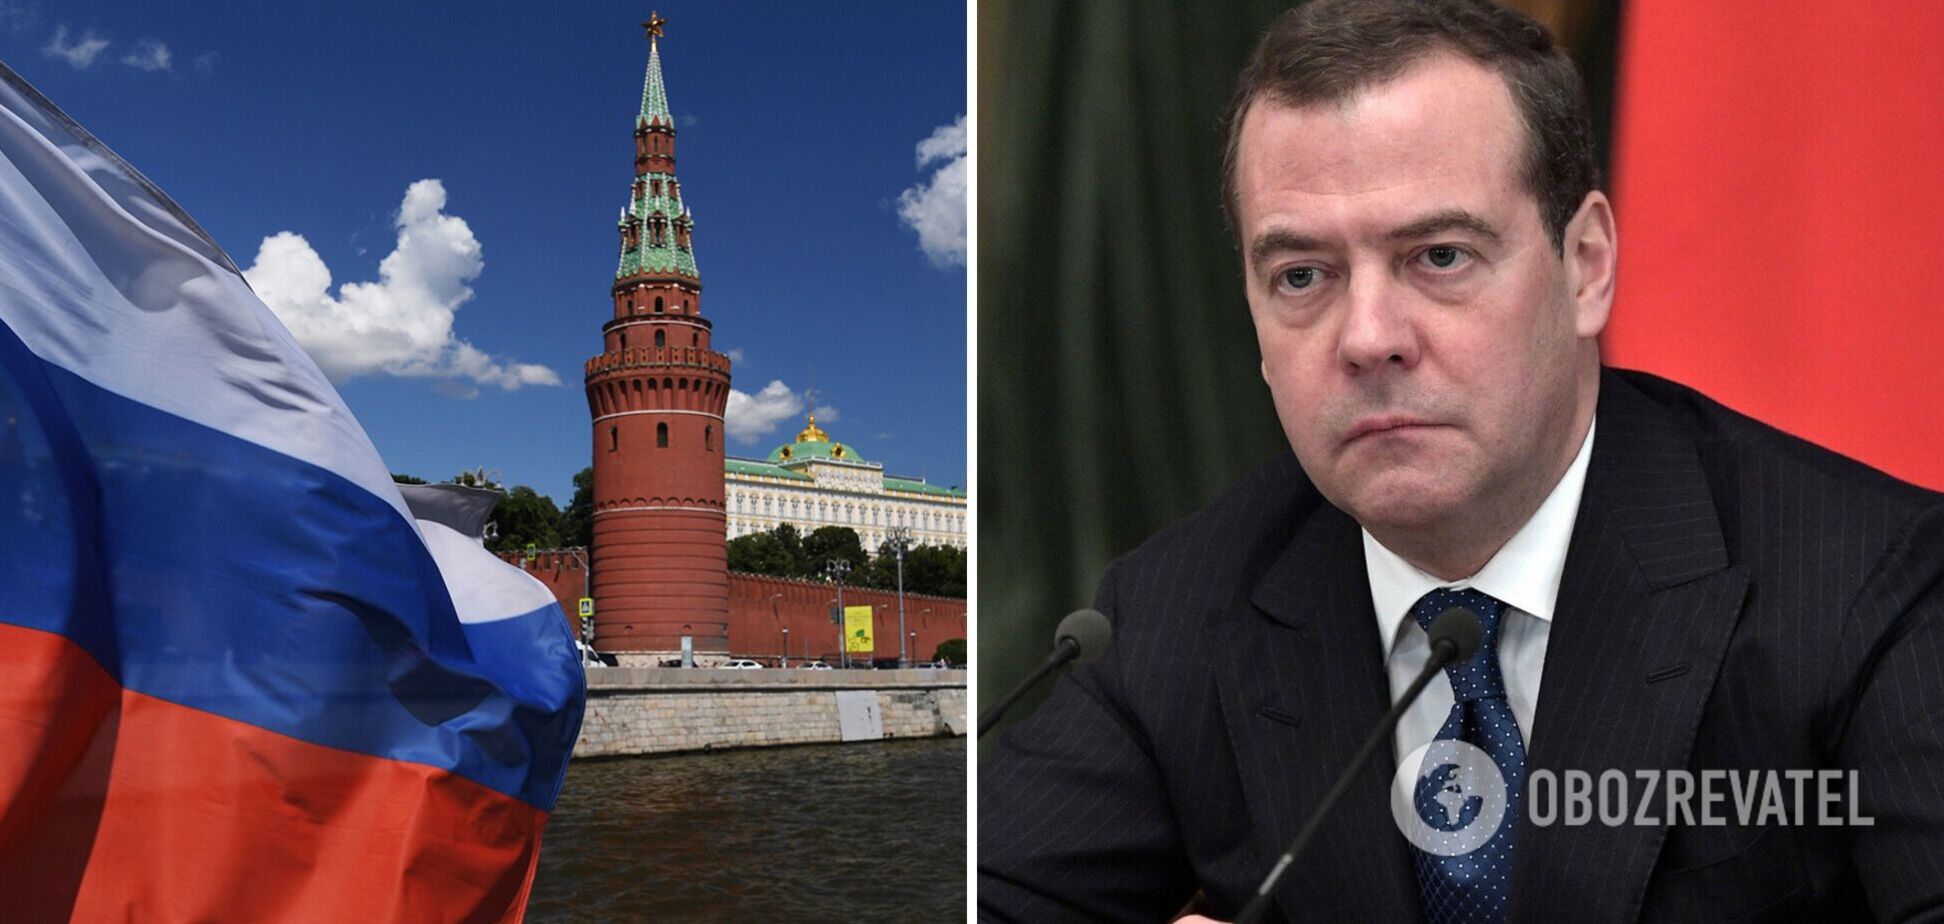 Медведев открыто заявил, что России наплевать на непризнание изменения границ Украины со стороны G7